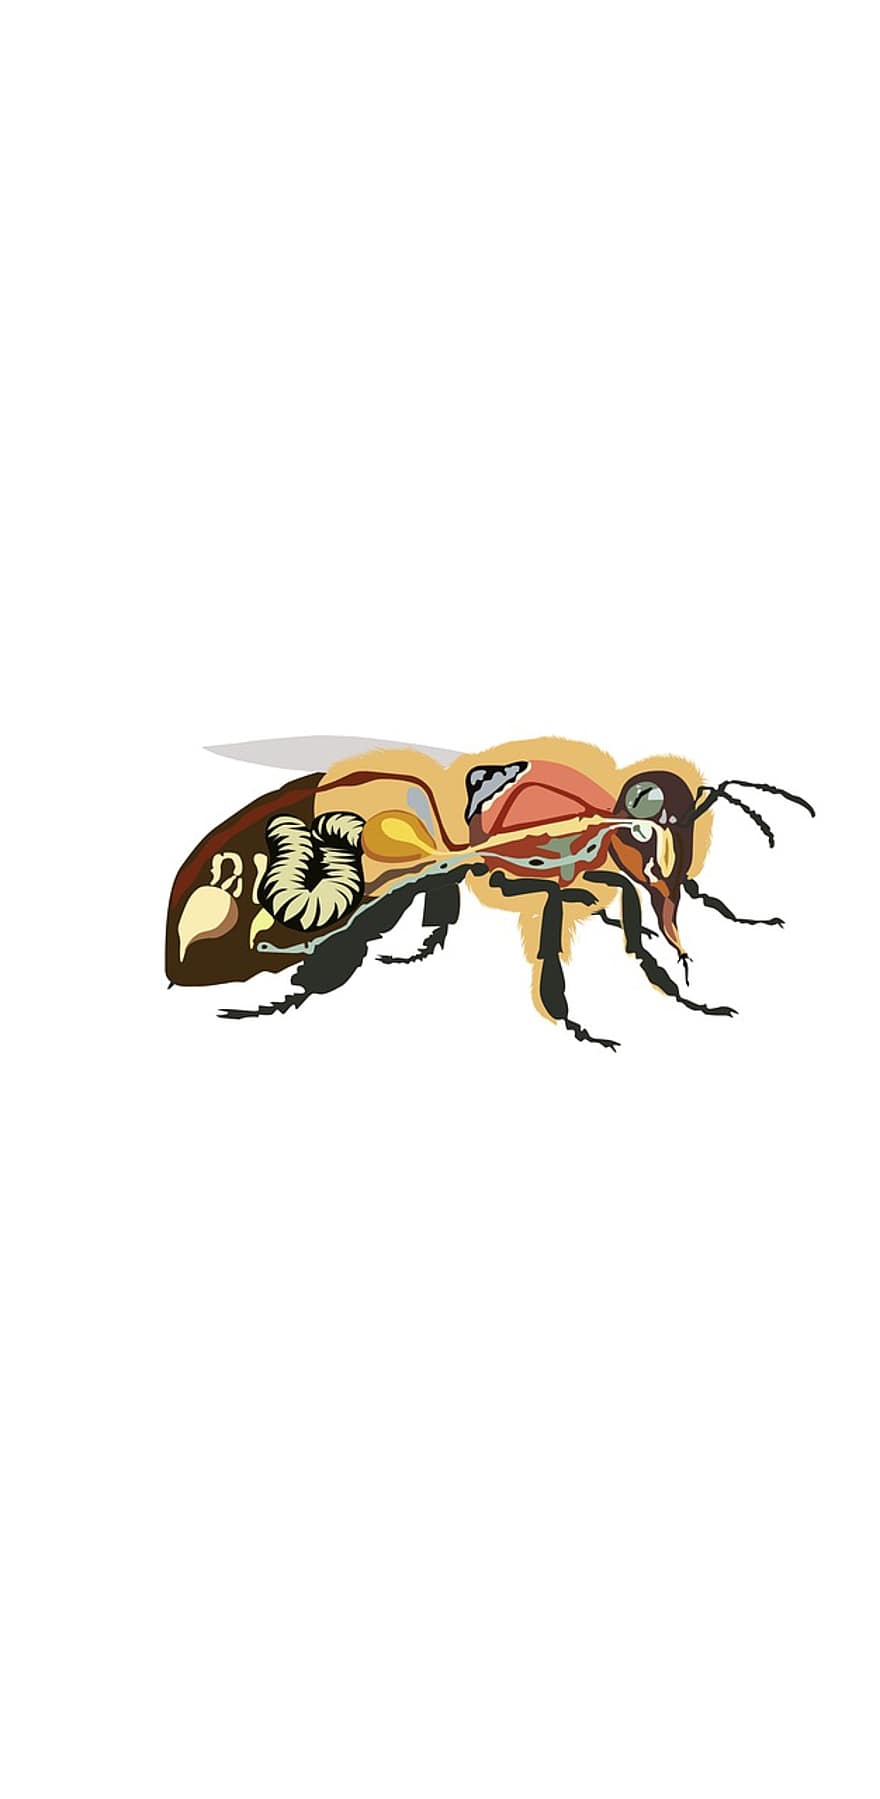 anatomia pszczół, pszczoła, owad, kochanie, miód pszczeli, anatomia, rysunek, ilustracja, Mrówka, osa, wektor